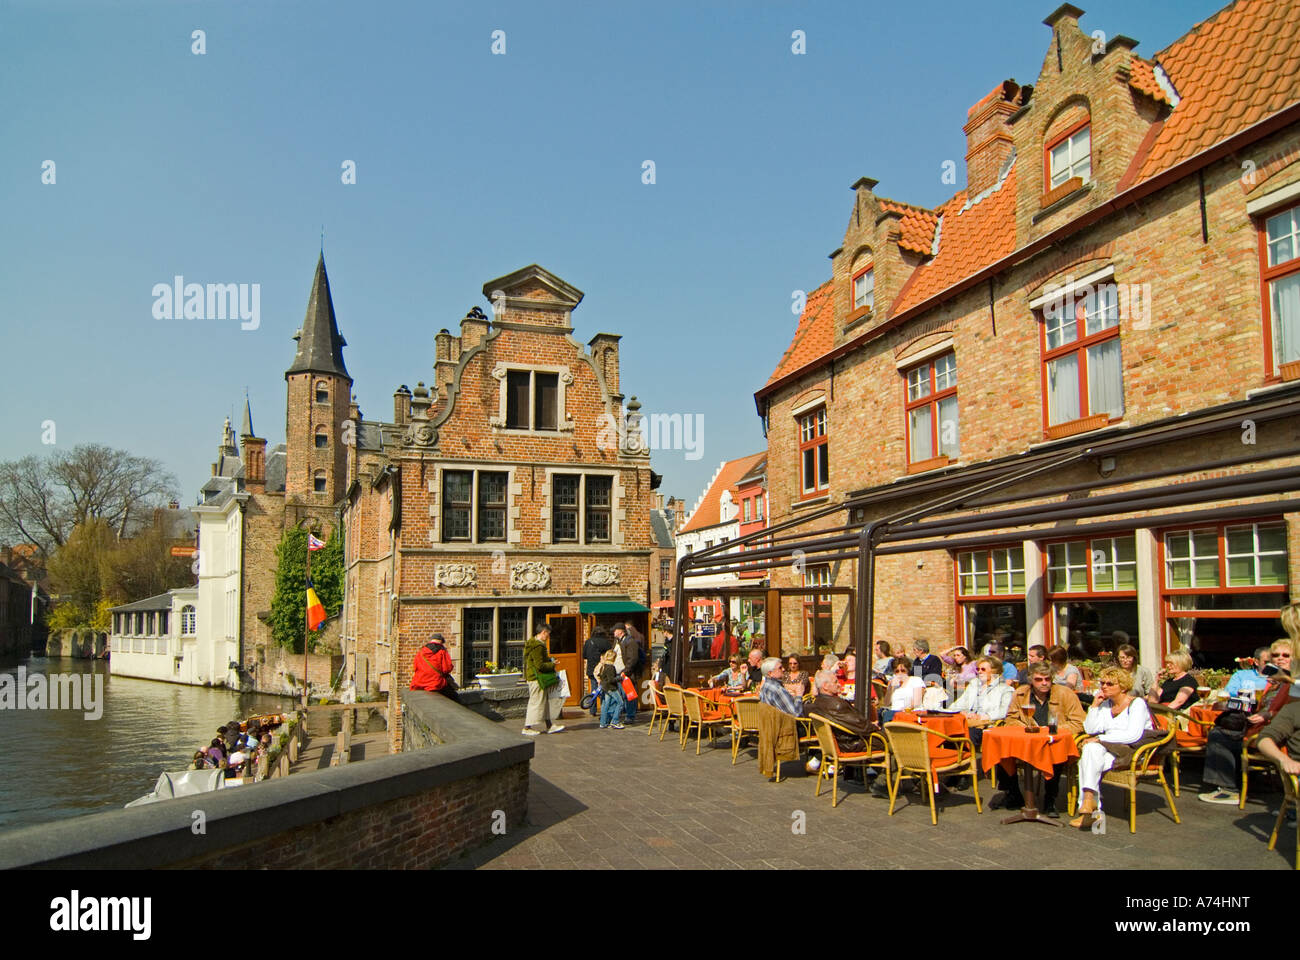 Vue horizontale de la rue piétonne Huidenvettersplein auprès des touristes assis à la rue des cafés au soleil. Banque D'Images